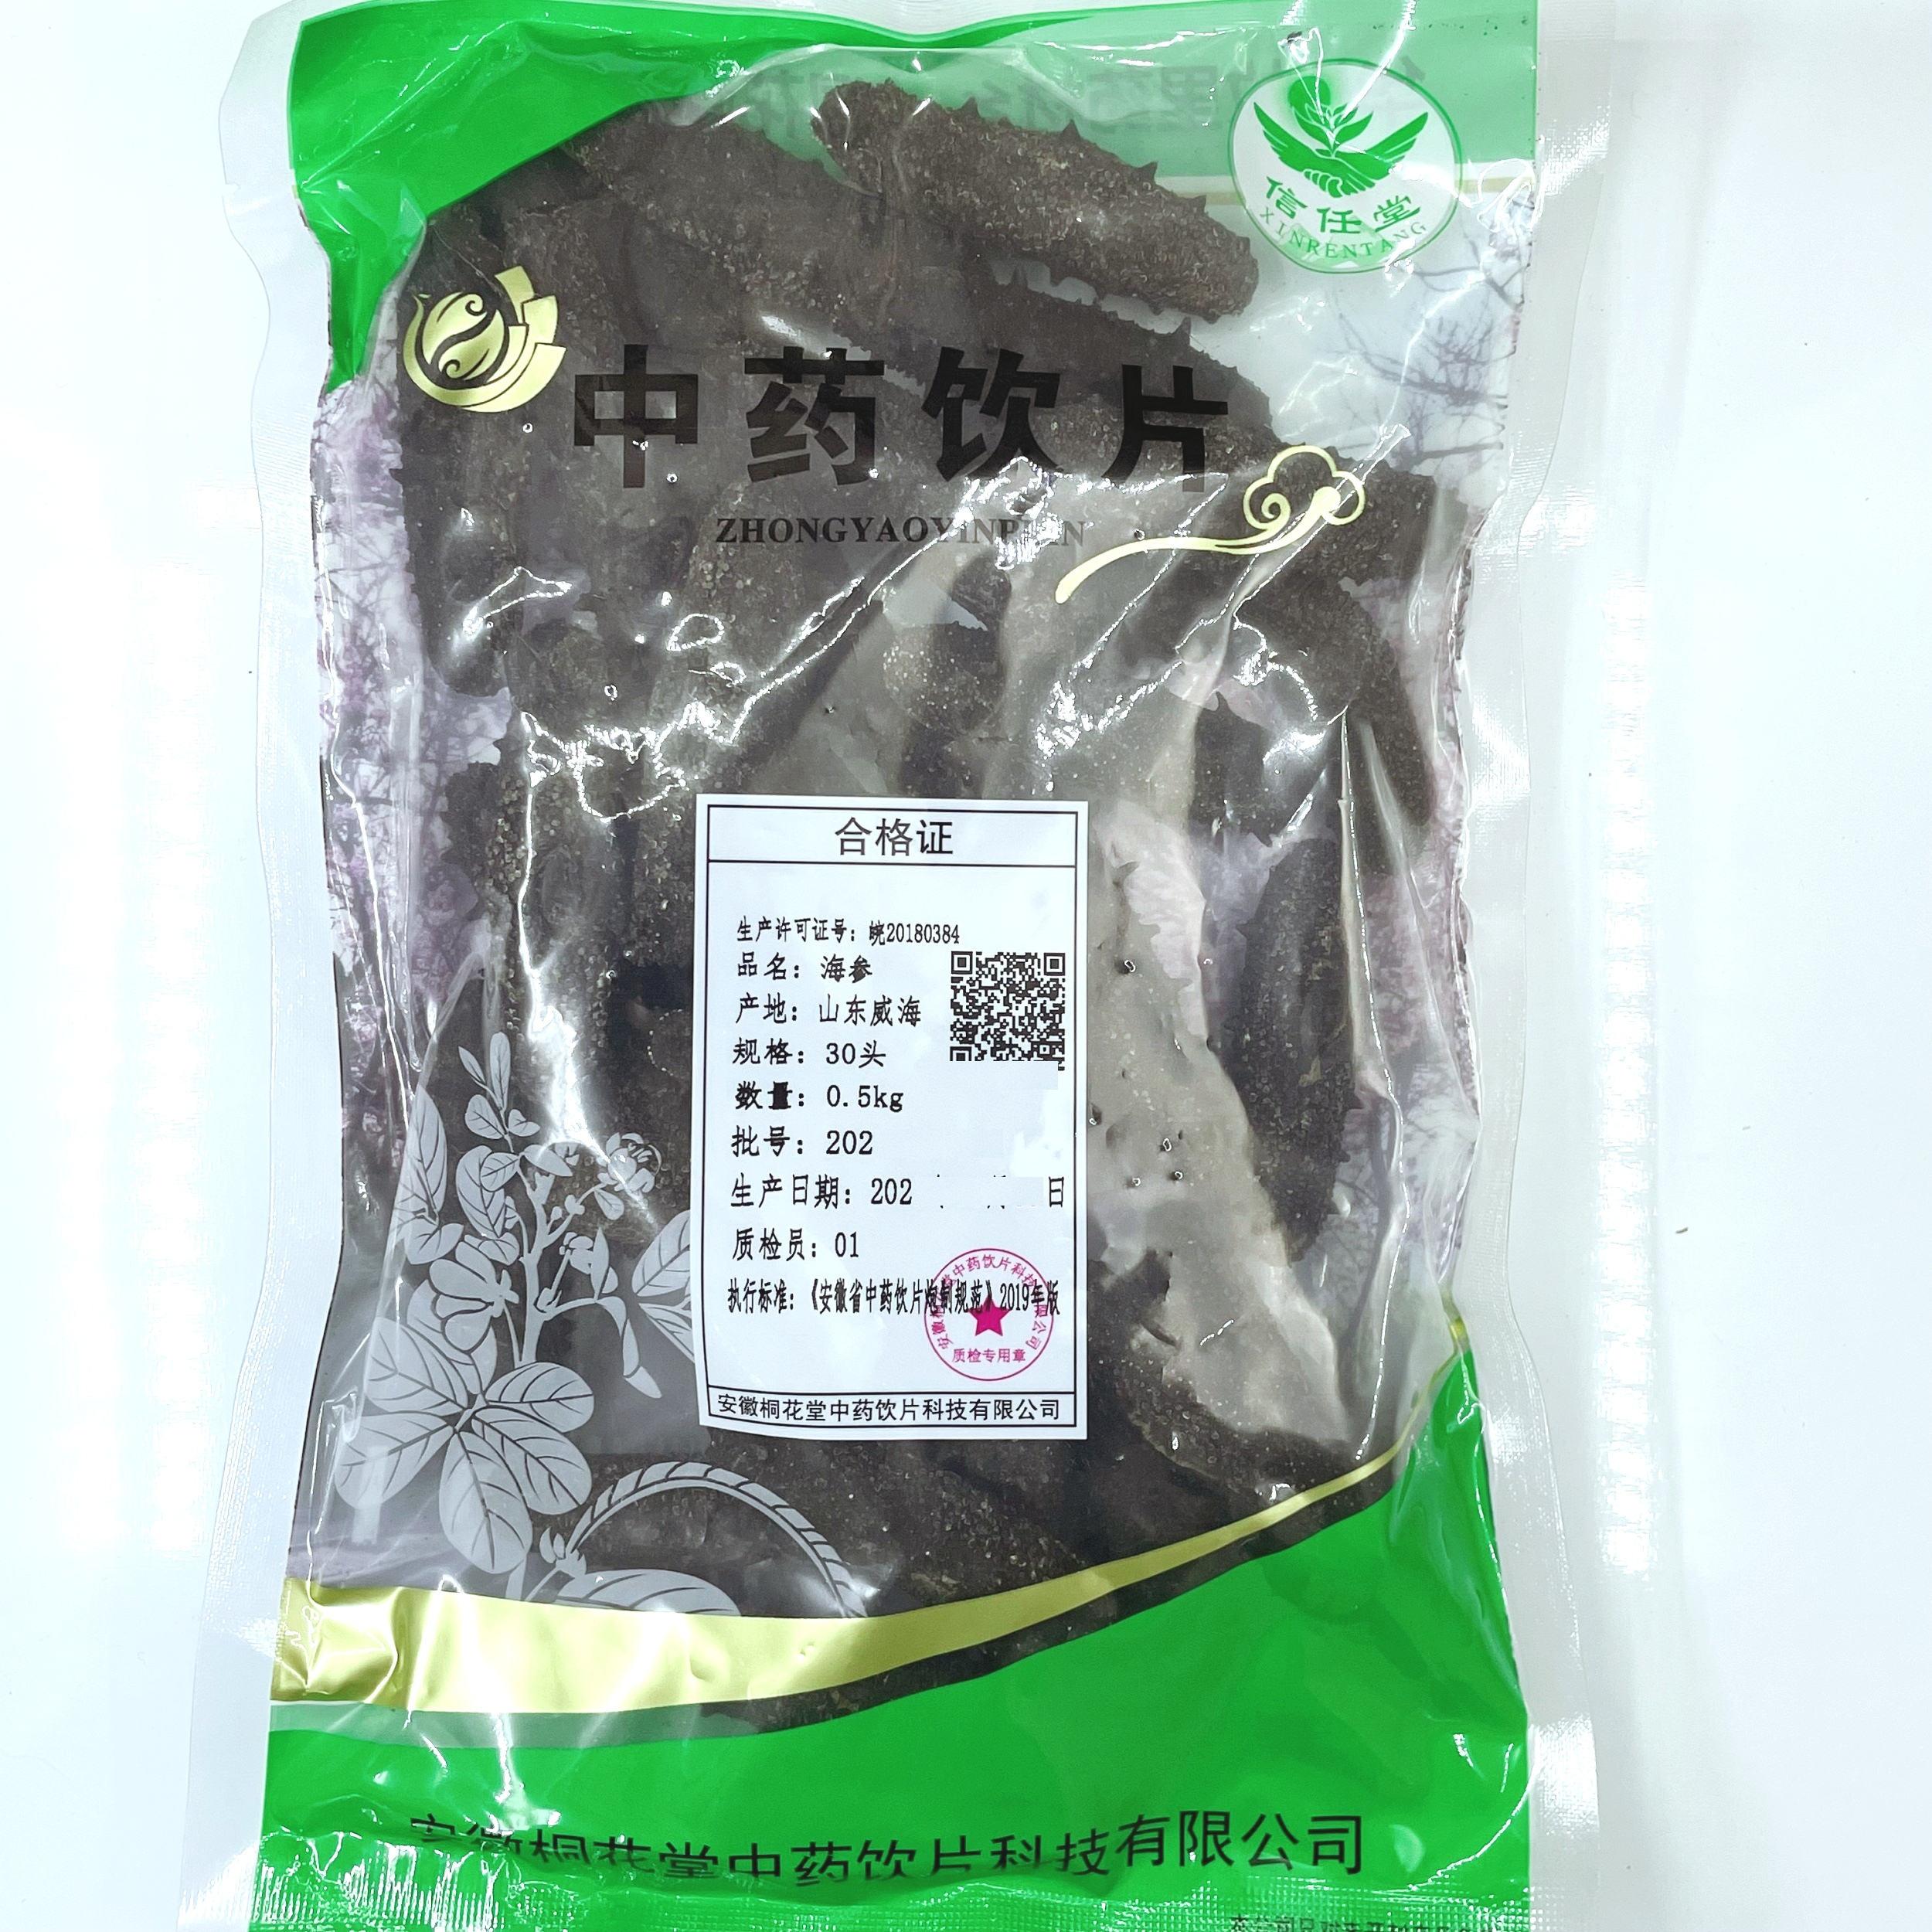 【】海参-30头-0.5kg/袋-安徽桐花堂中药饮片科技有限公司